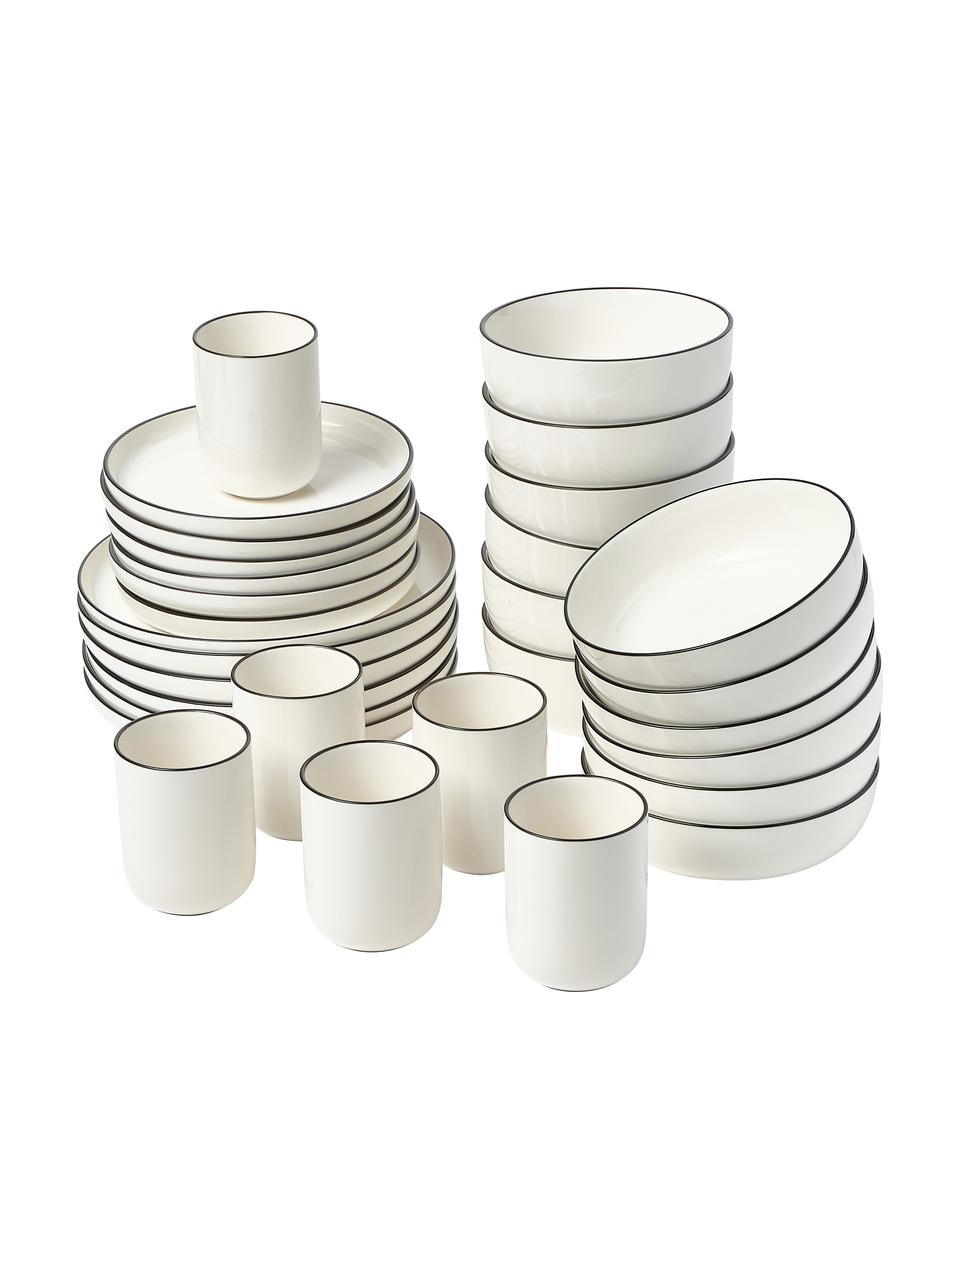 Sada porcelánového nádobí Facile, pro 6 osob (30 dílů), Vysoce kvalitní tvrdý porcelán (cca 50 % kaolinu, 25 % křemene a 25 % živce), Krémově bílá s černým okrajem, Pro 6 osoby (30 dílů)